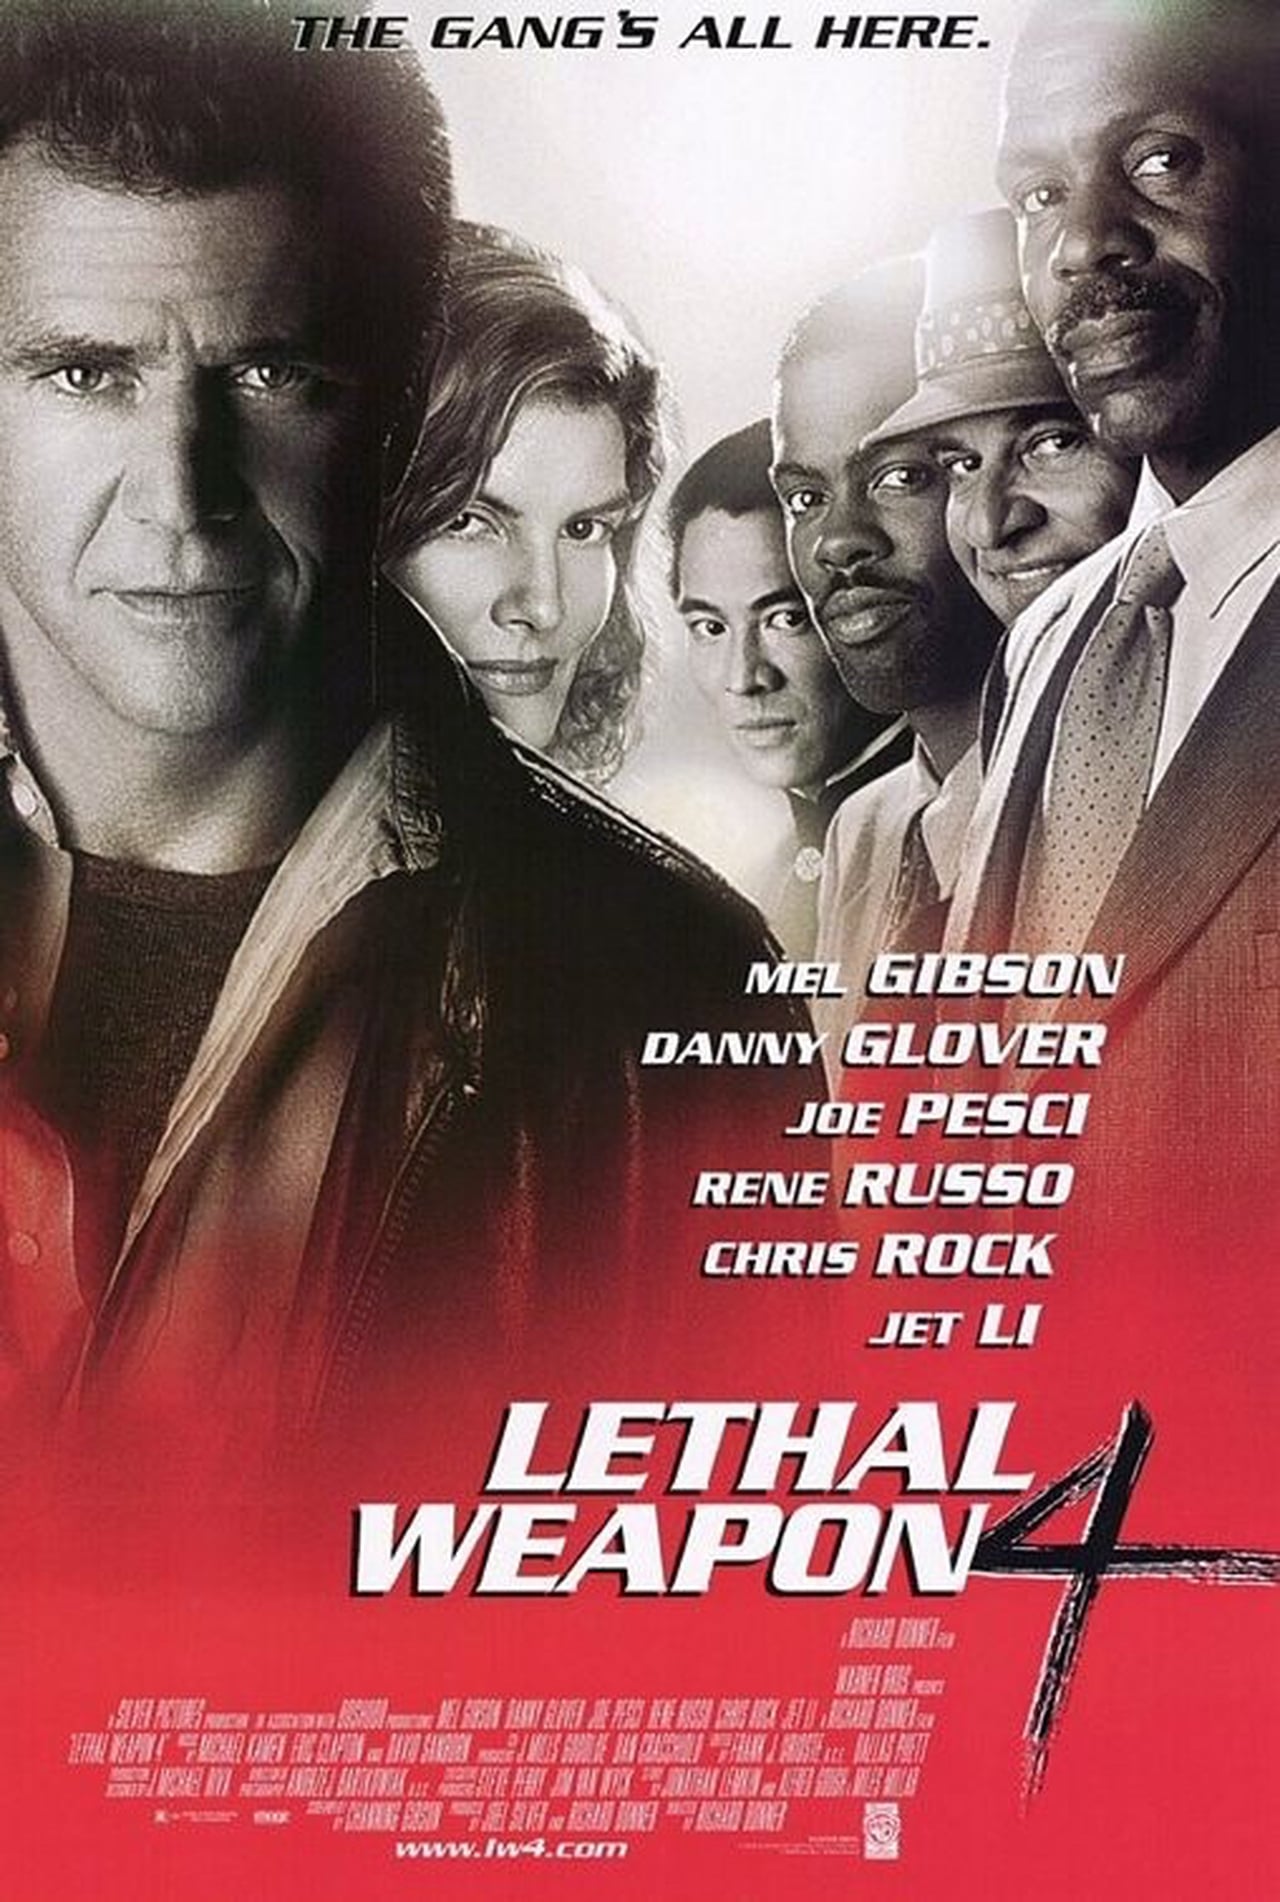 EN - Lethal Weapon 4 (1998) JOE PESCI, JET LI